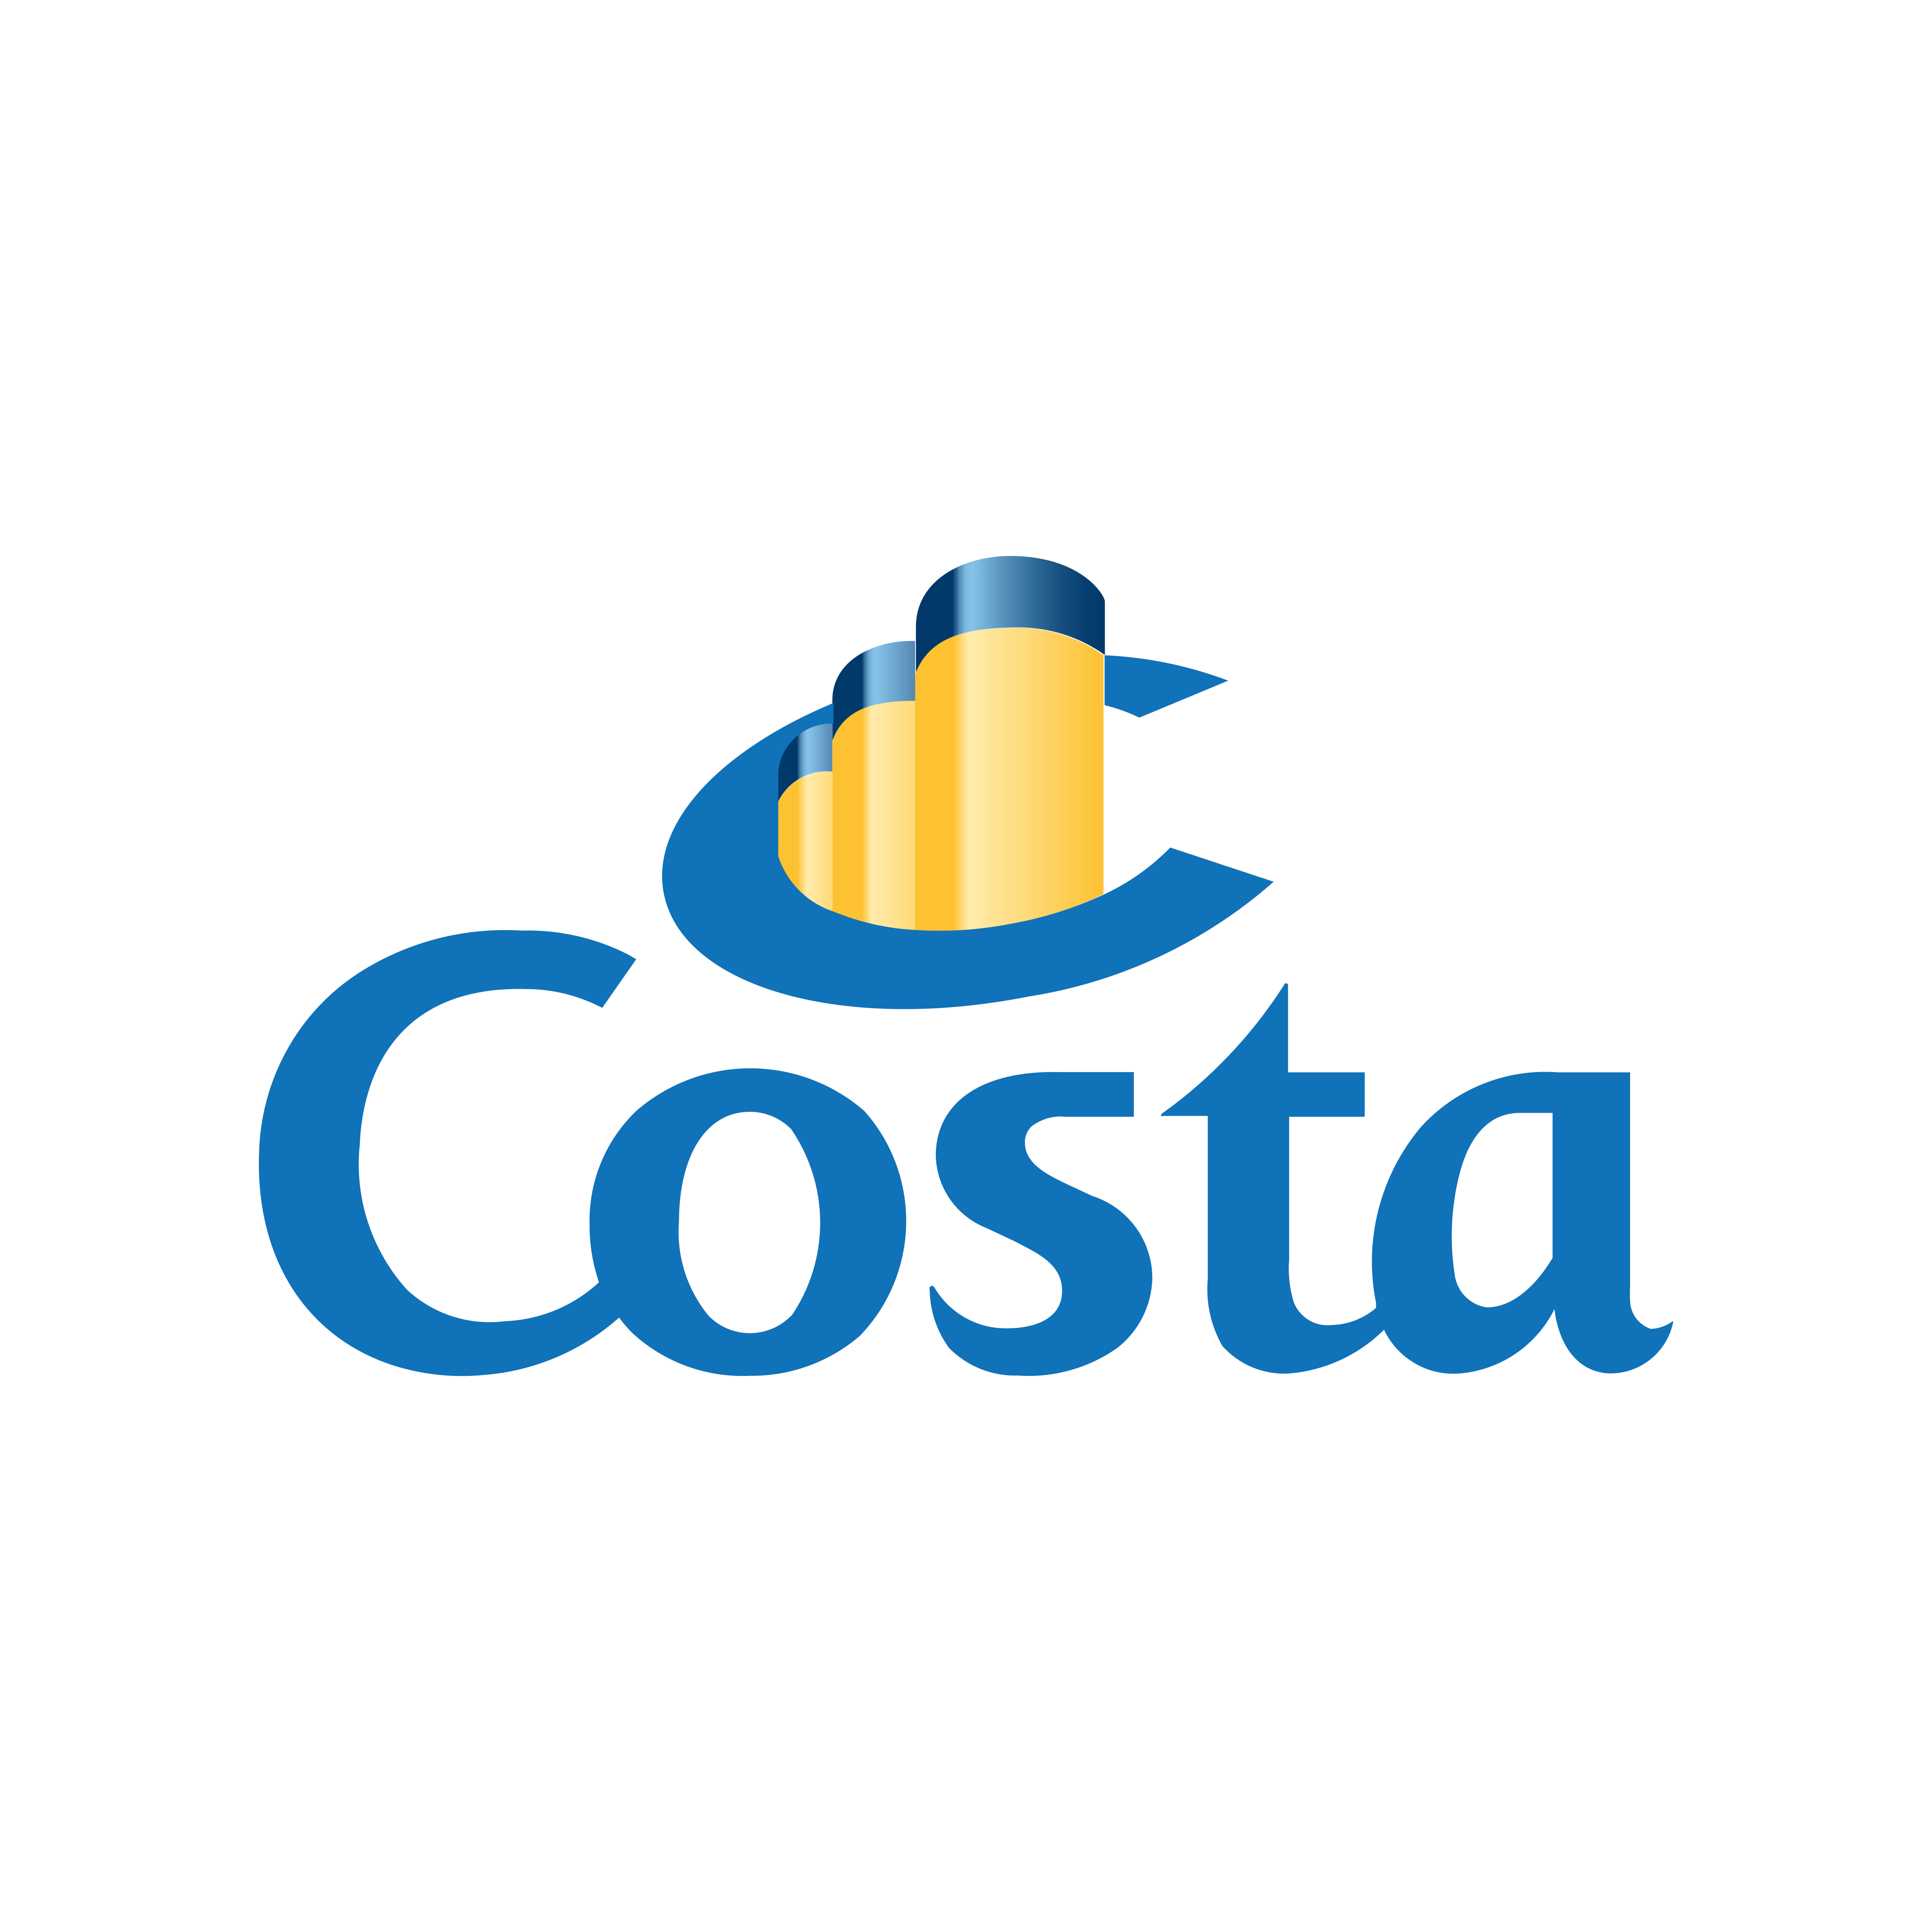 costa crociere logo 0 - Costa Cruceros Logo